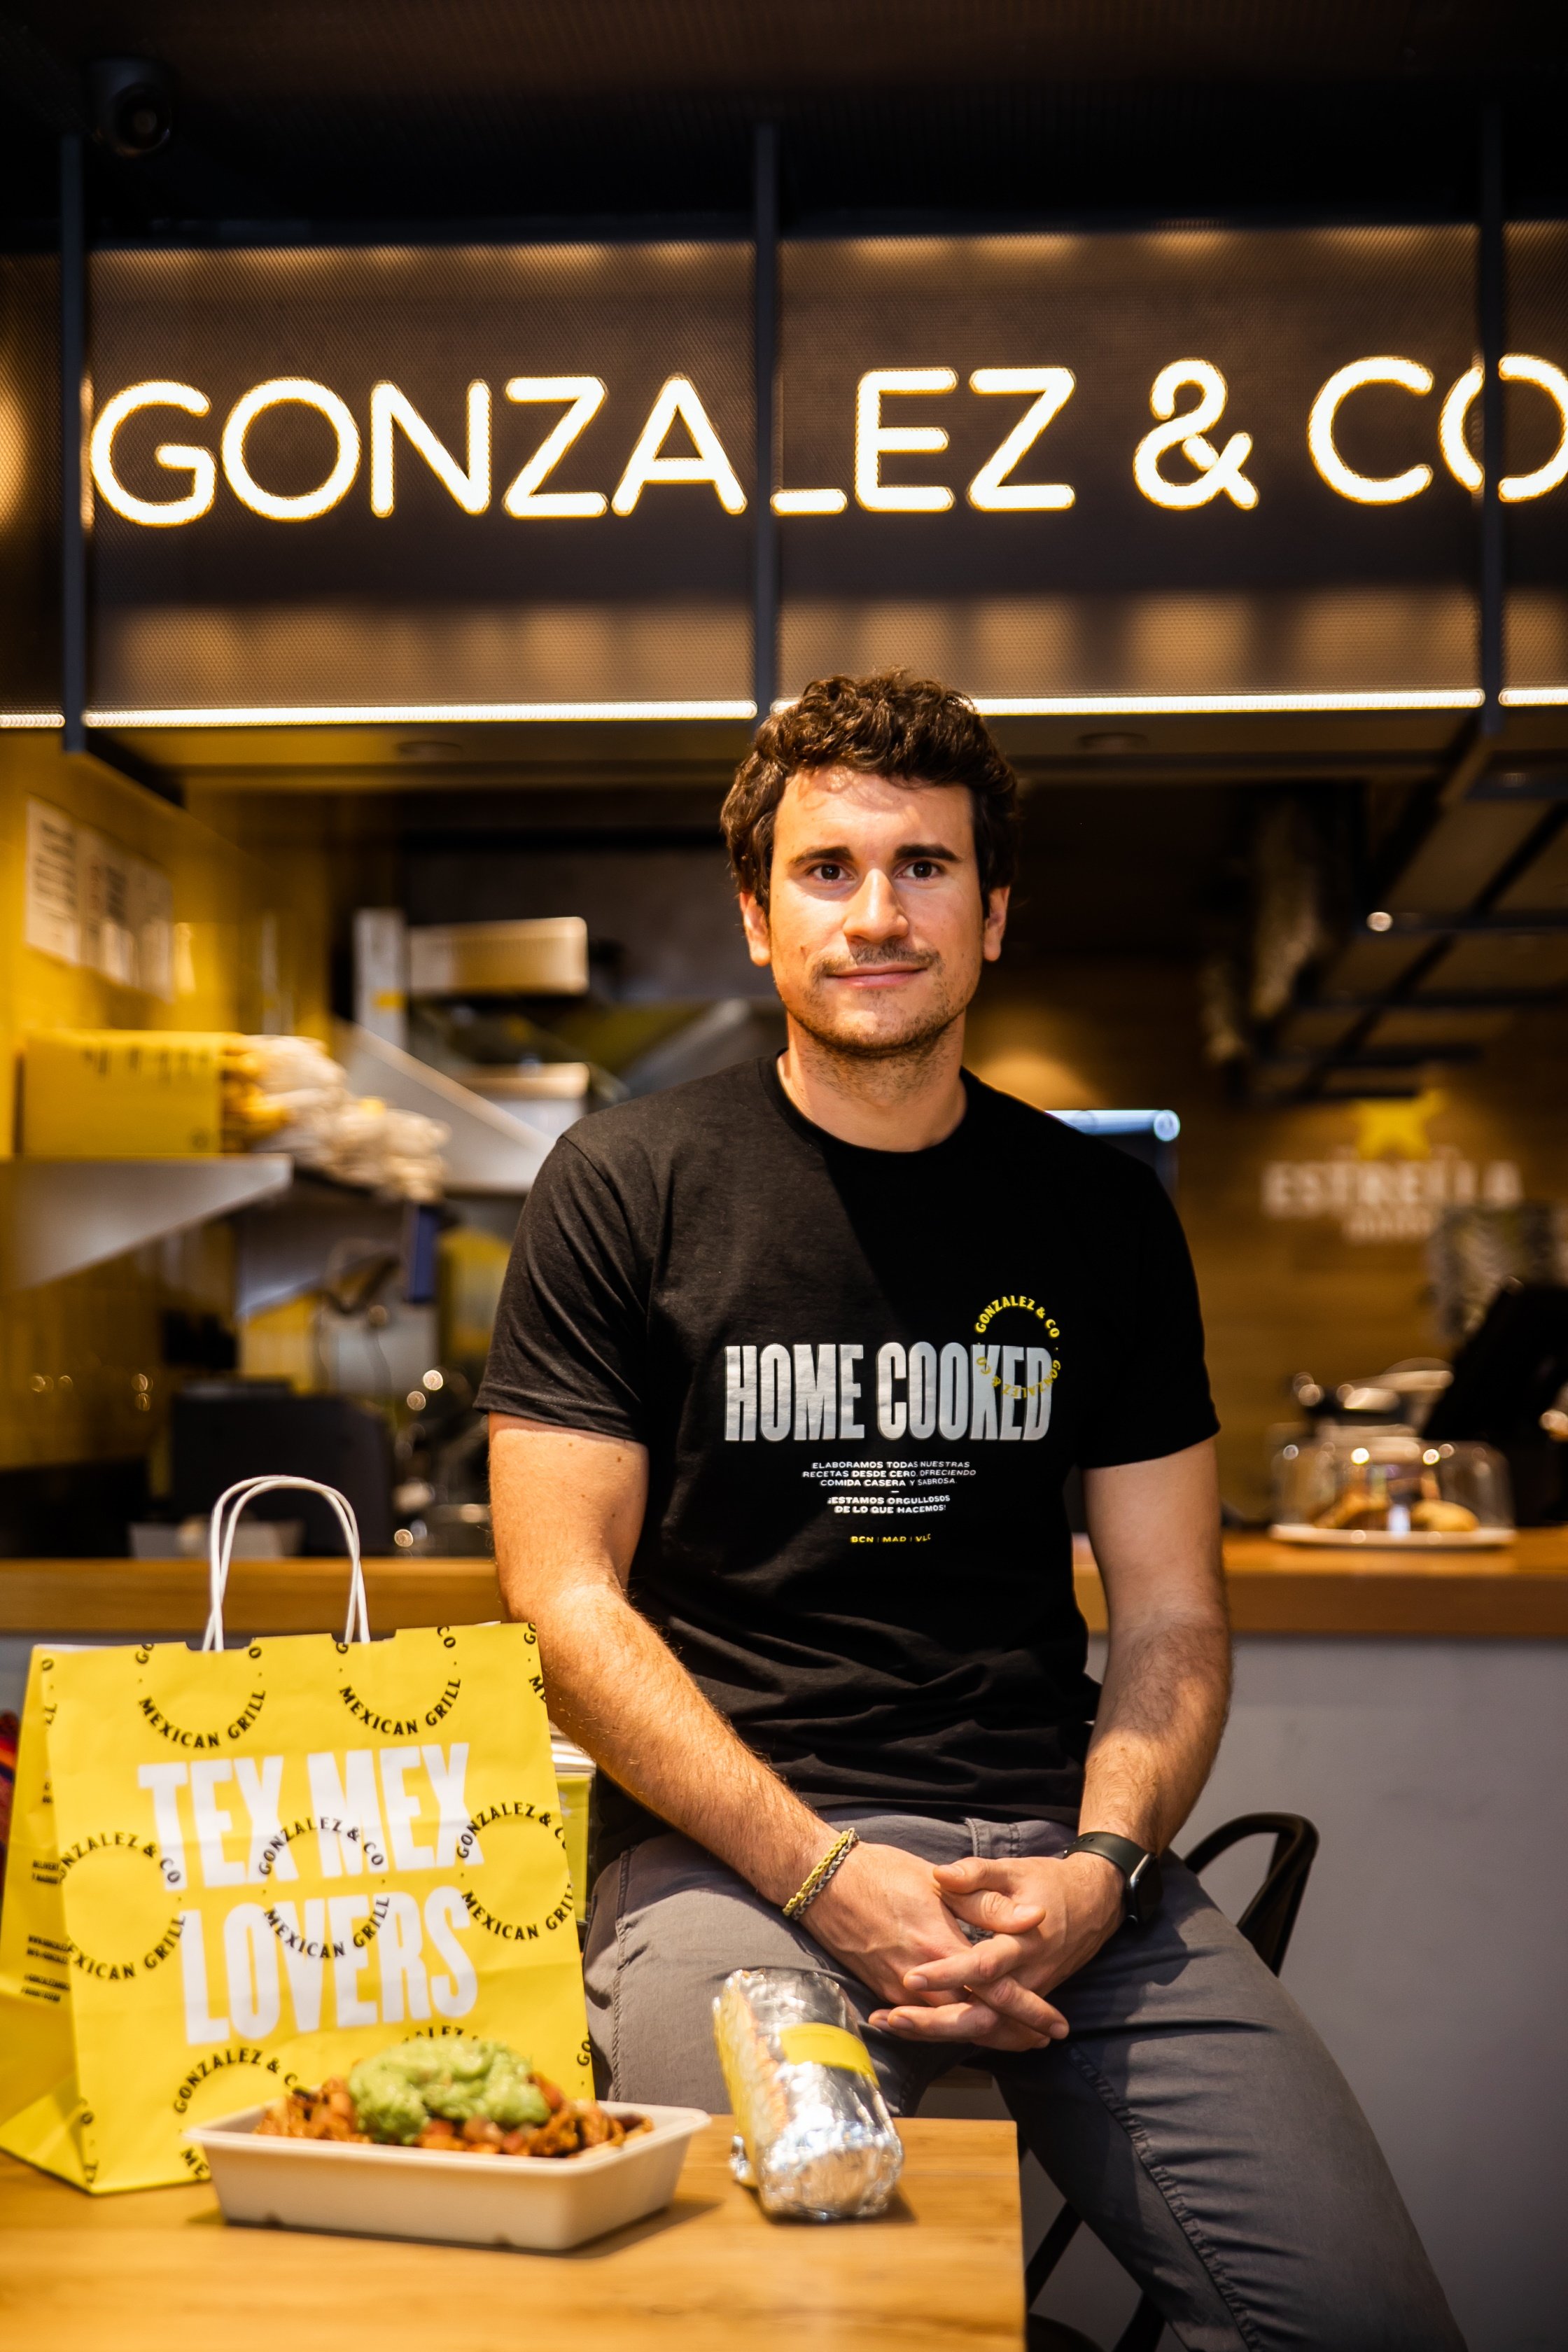 Gonzalez&Co preveu facturar 8 milions i obrir més restaurants a Catalunya el 2023